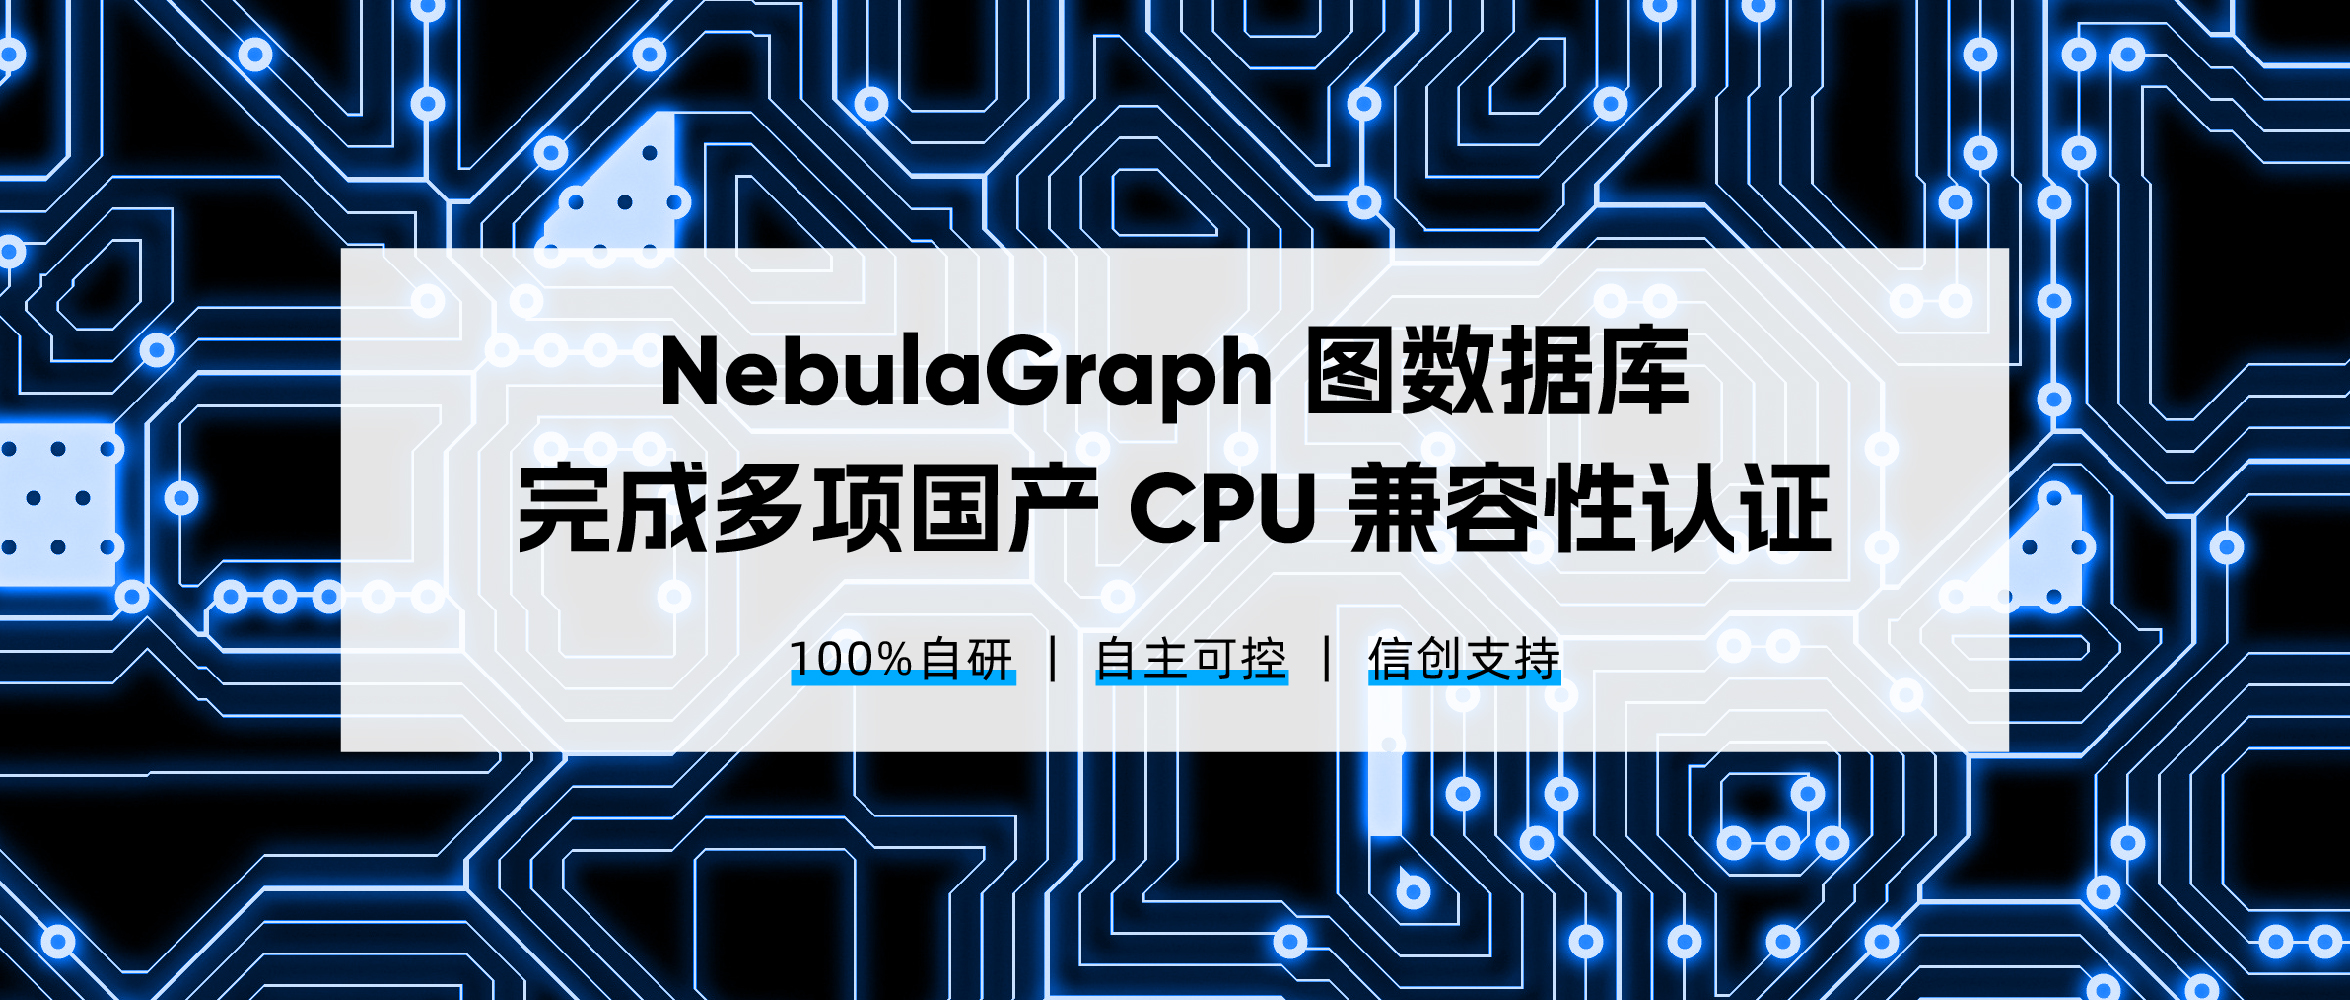 分布式图数据库NebulaGraph完成与鲲鹏_飞腾_海光等多款国产 CPU的兼容性认证